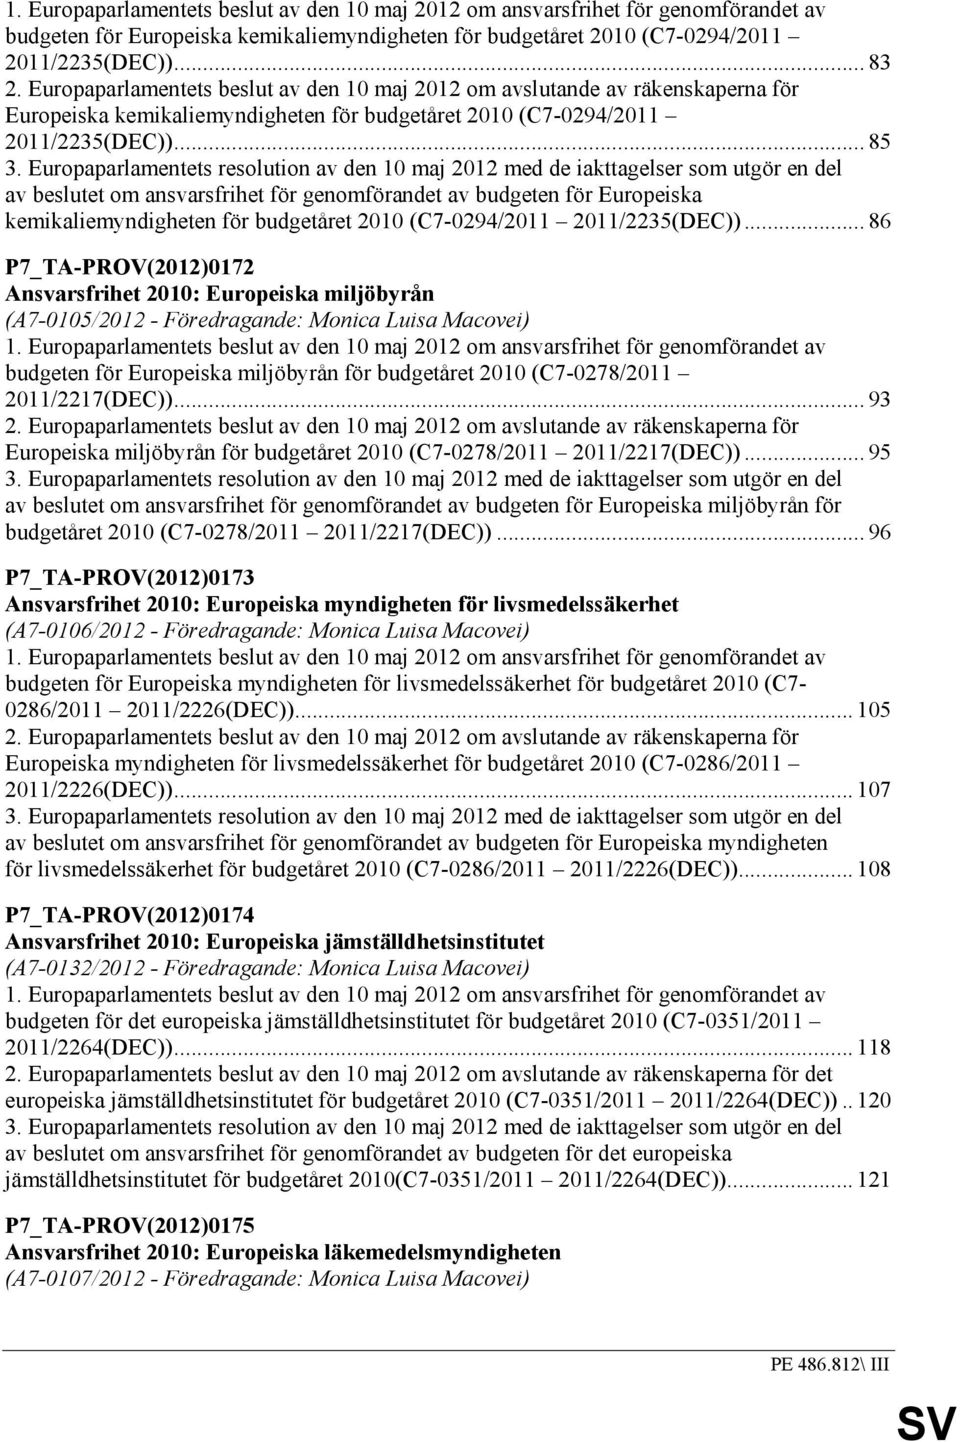 Europaparlamentets resolution av den 10 maj 2012 med de iakttagelser som utgör en del av beslutet om ansvarsfrihet för genomförandet av budgeten för Europeiska kemikaliemyndigheten för budgetåret